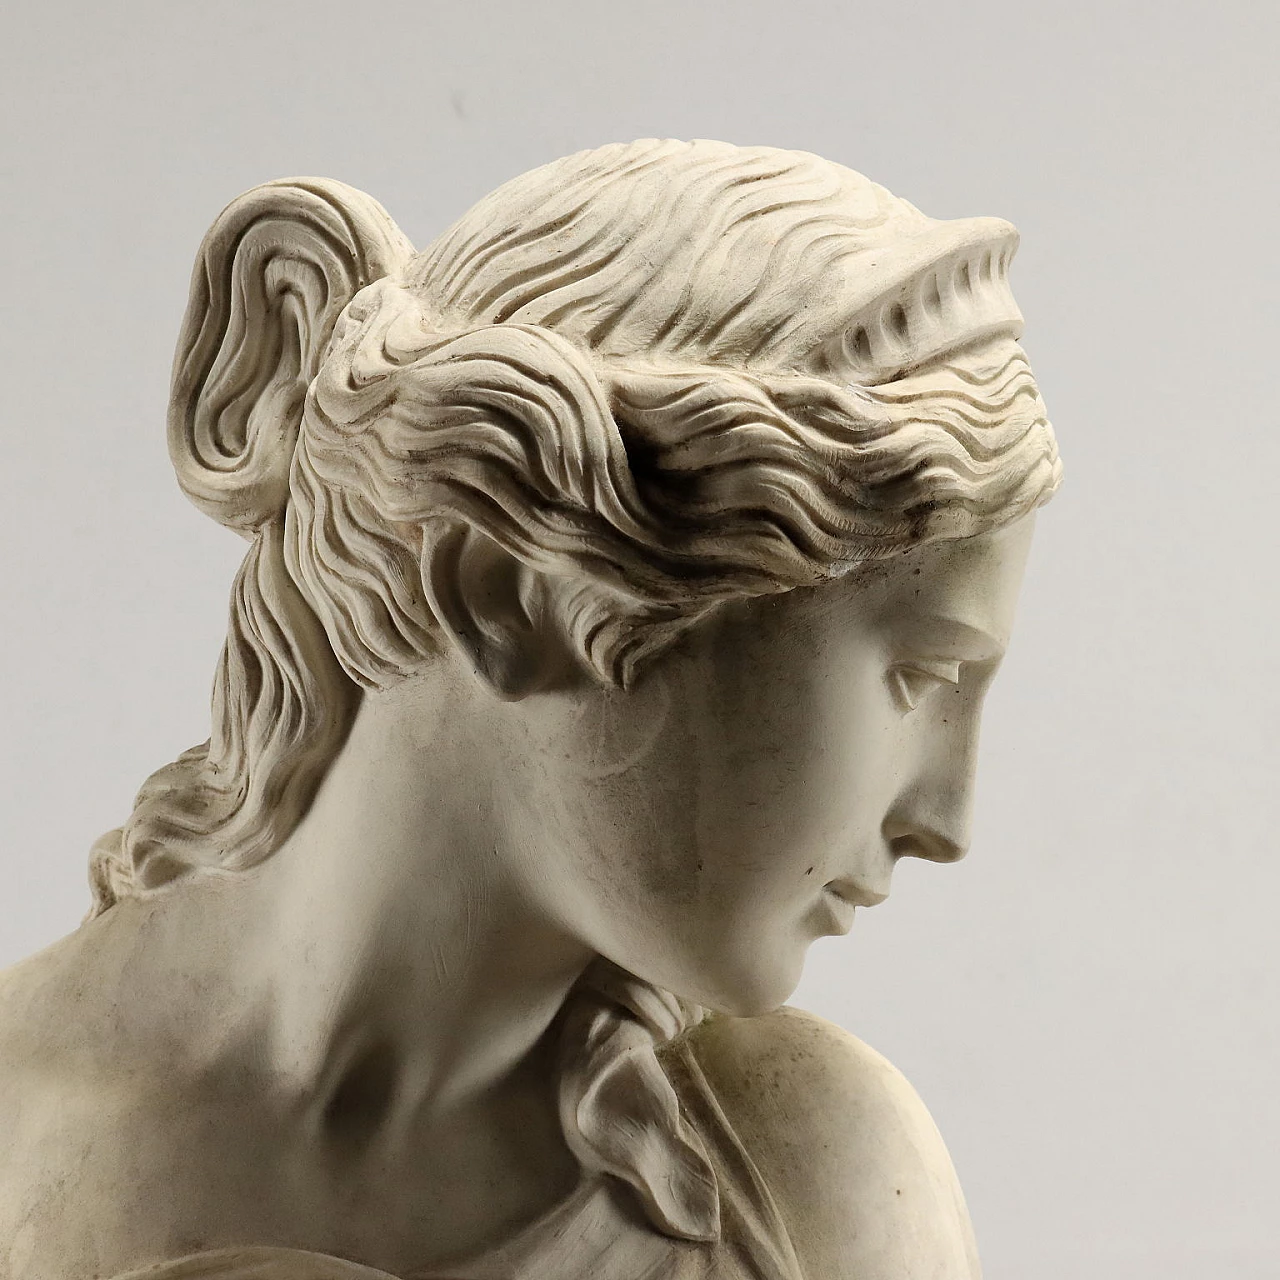 Dal Torrione, Venere alla fonte, statua in marmo sintetico 4